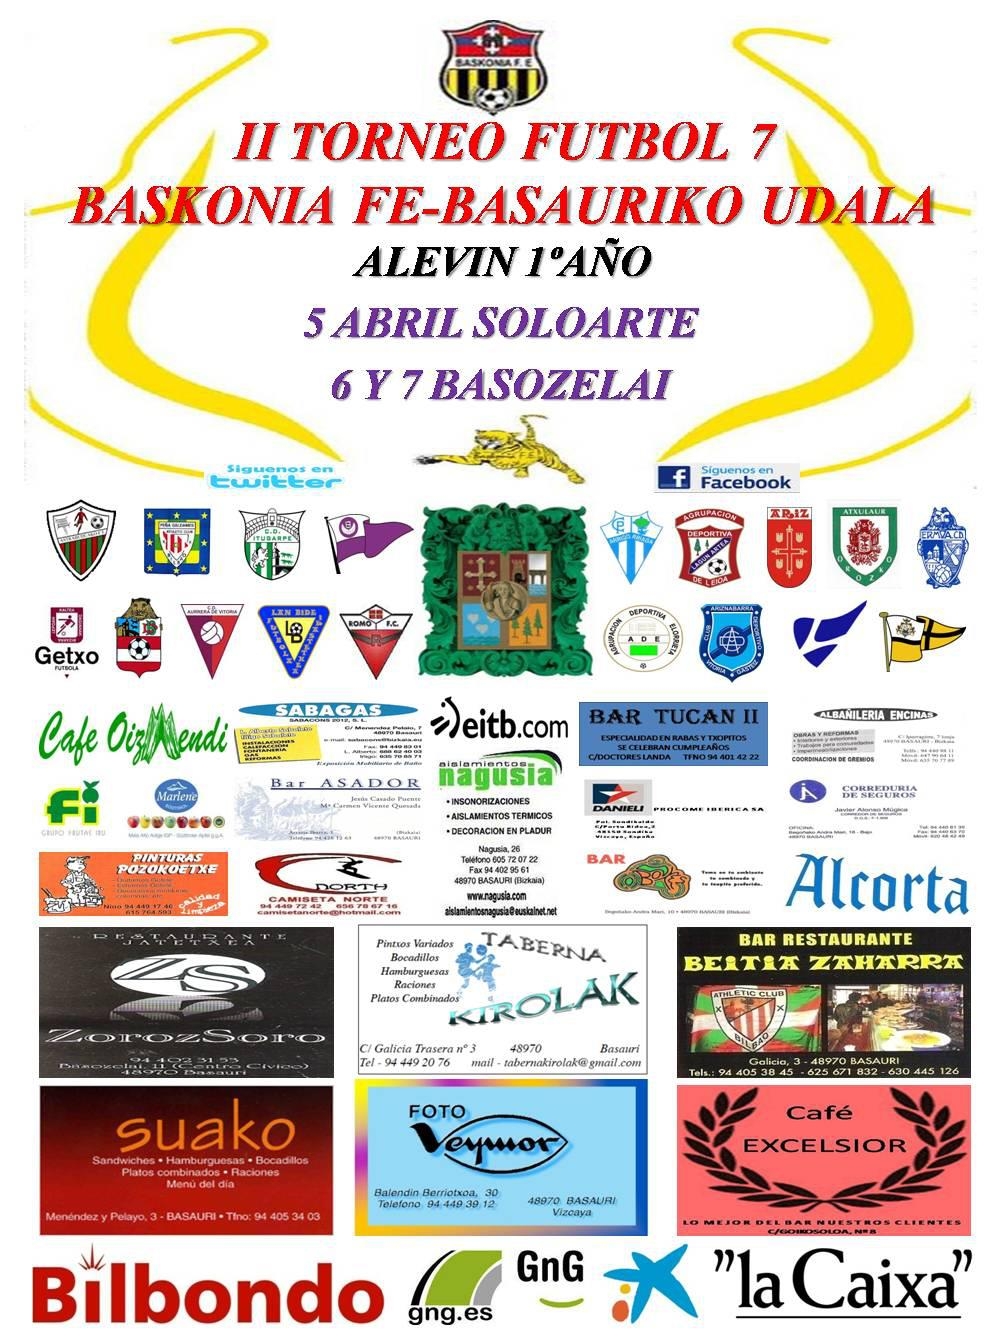 Cartel del Torneo con los organizadores, participantes y patrocinadores